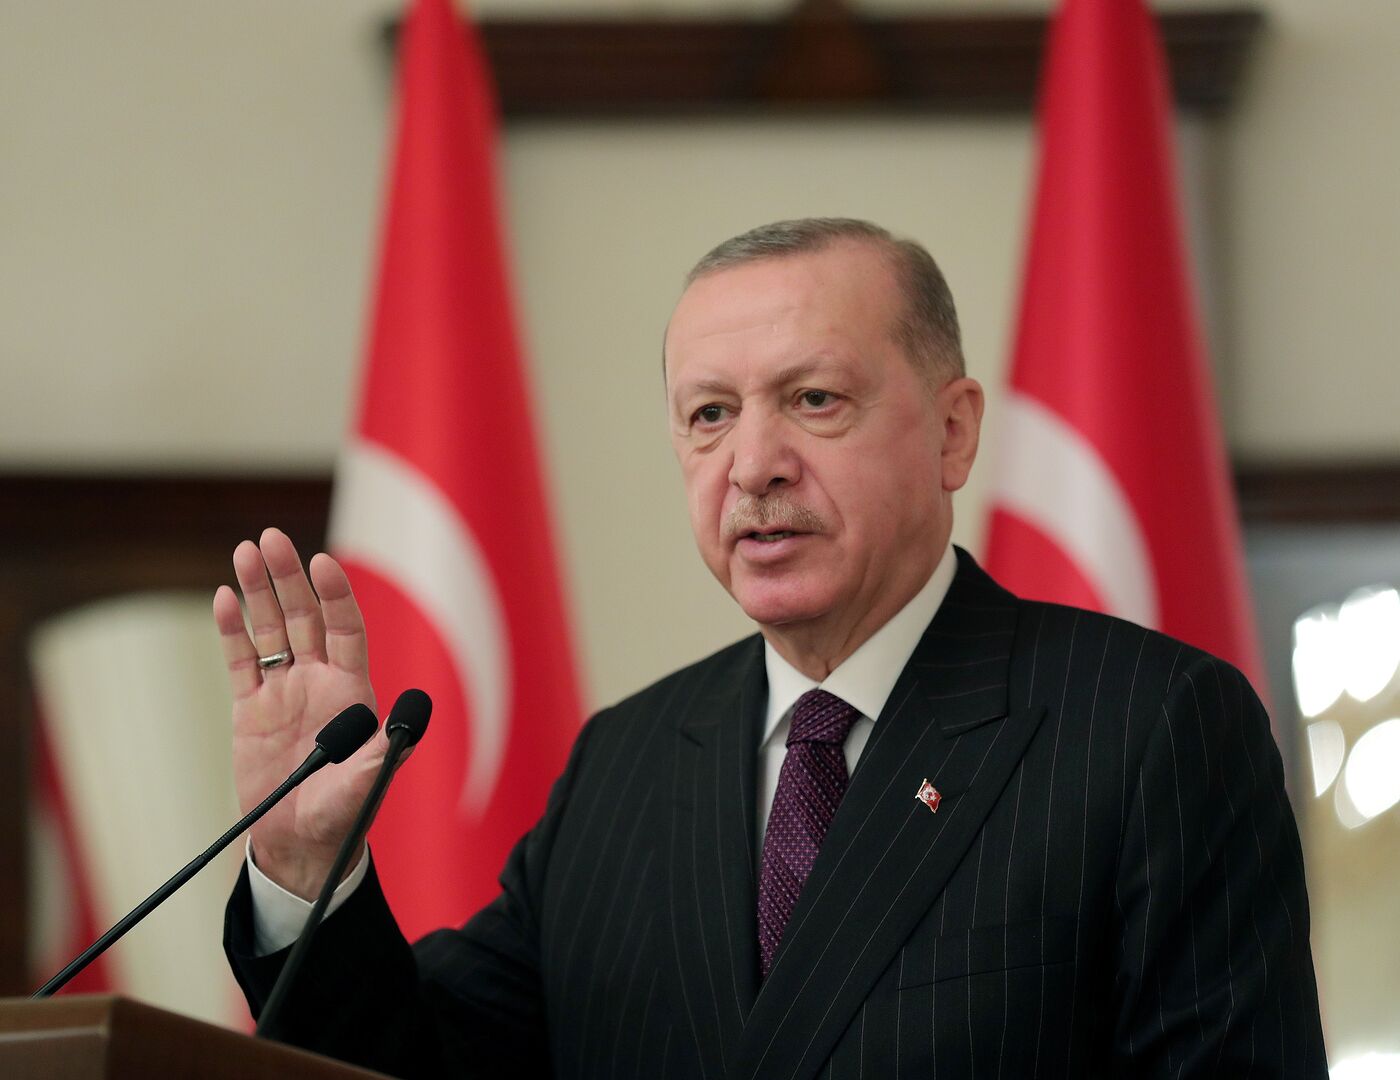 أردوغان: من لم يستطع لي ذراع تركيا في ليبيا وسوريا يحاول إعاقتها عبر مزاعم لا أساس لها